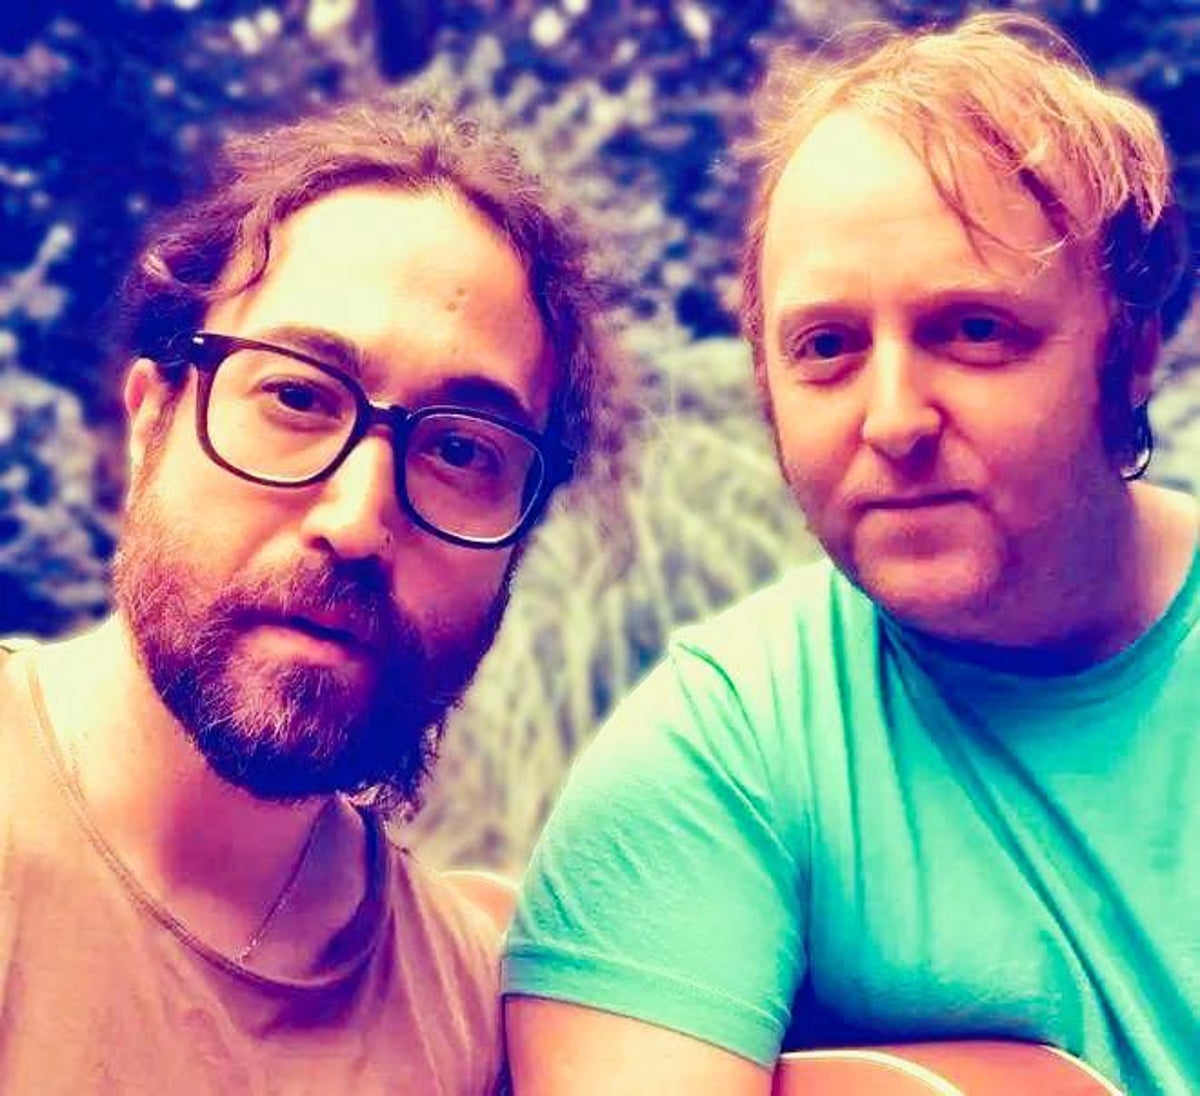 Paul McCartney and John Lennon’s sons release new song